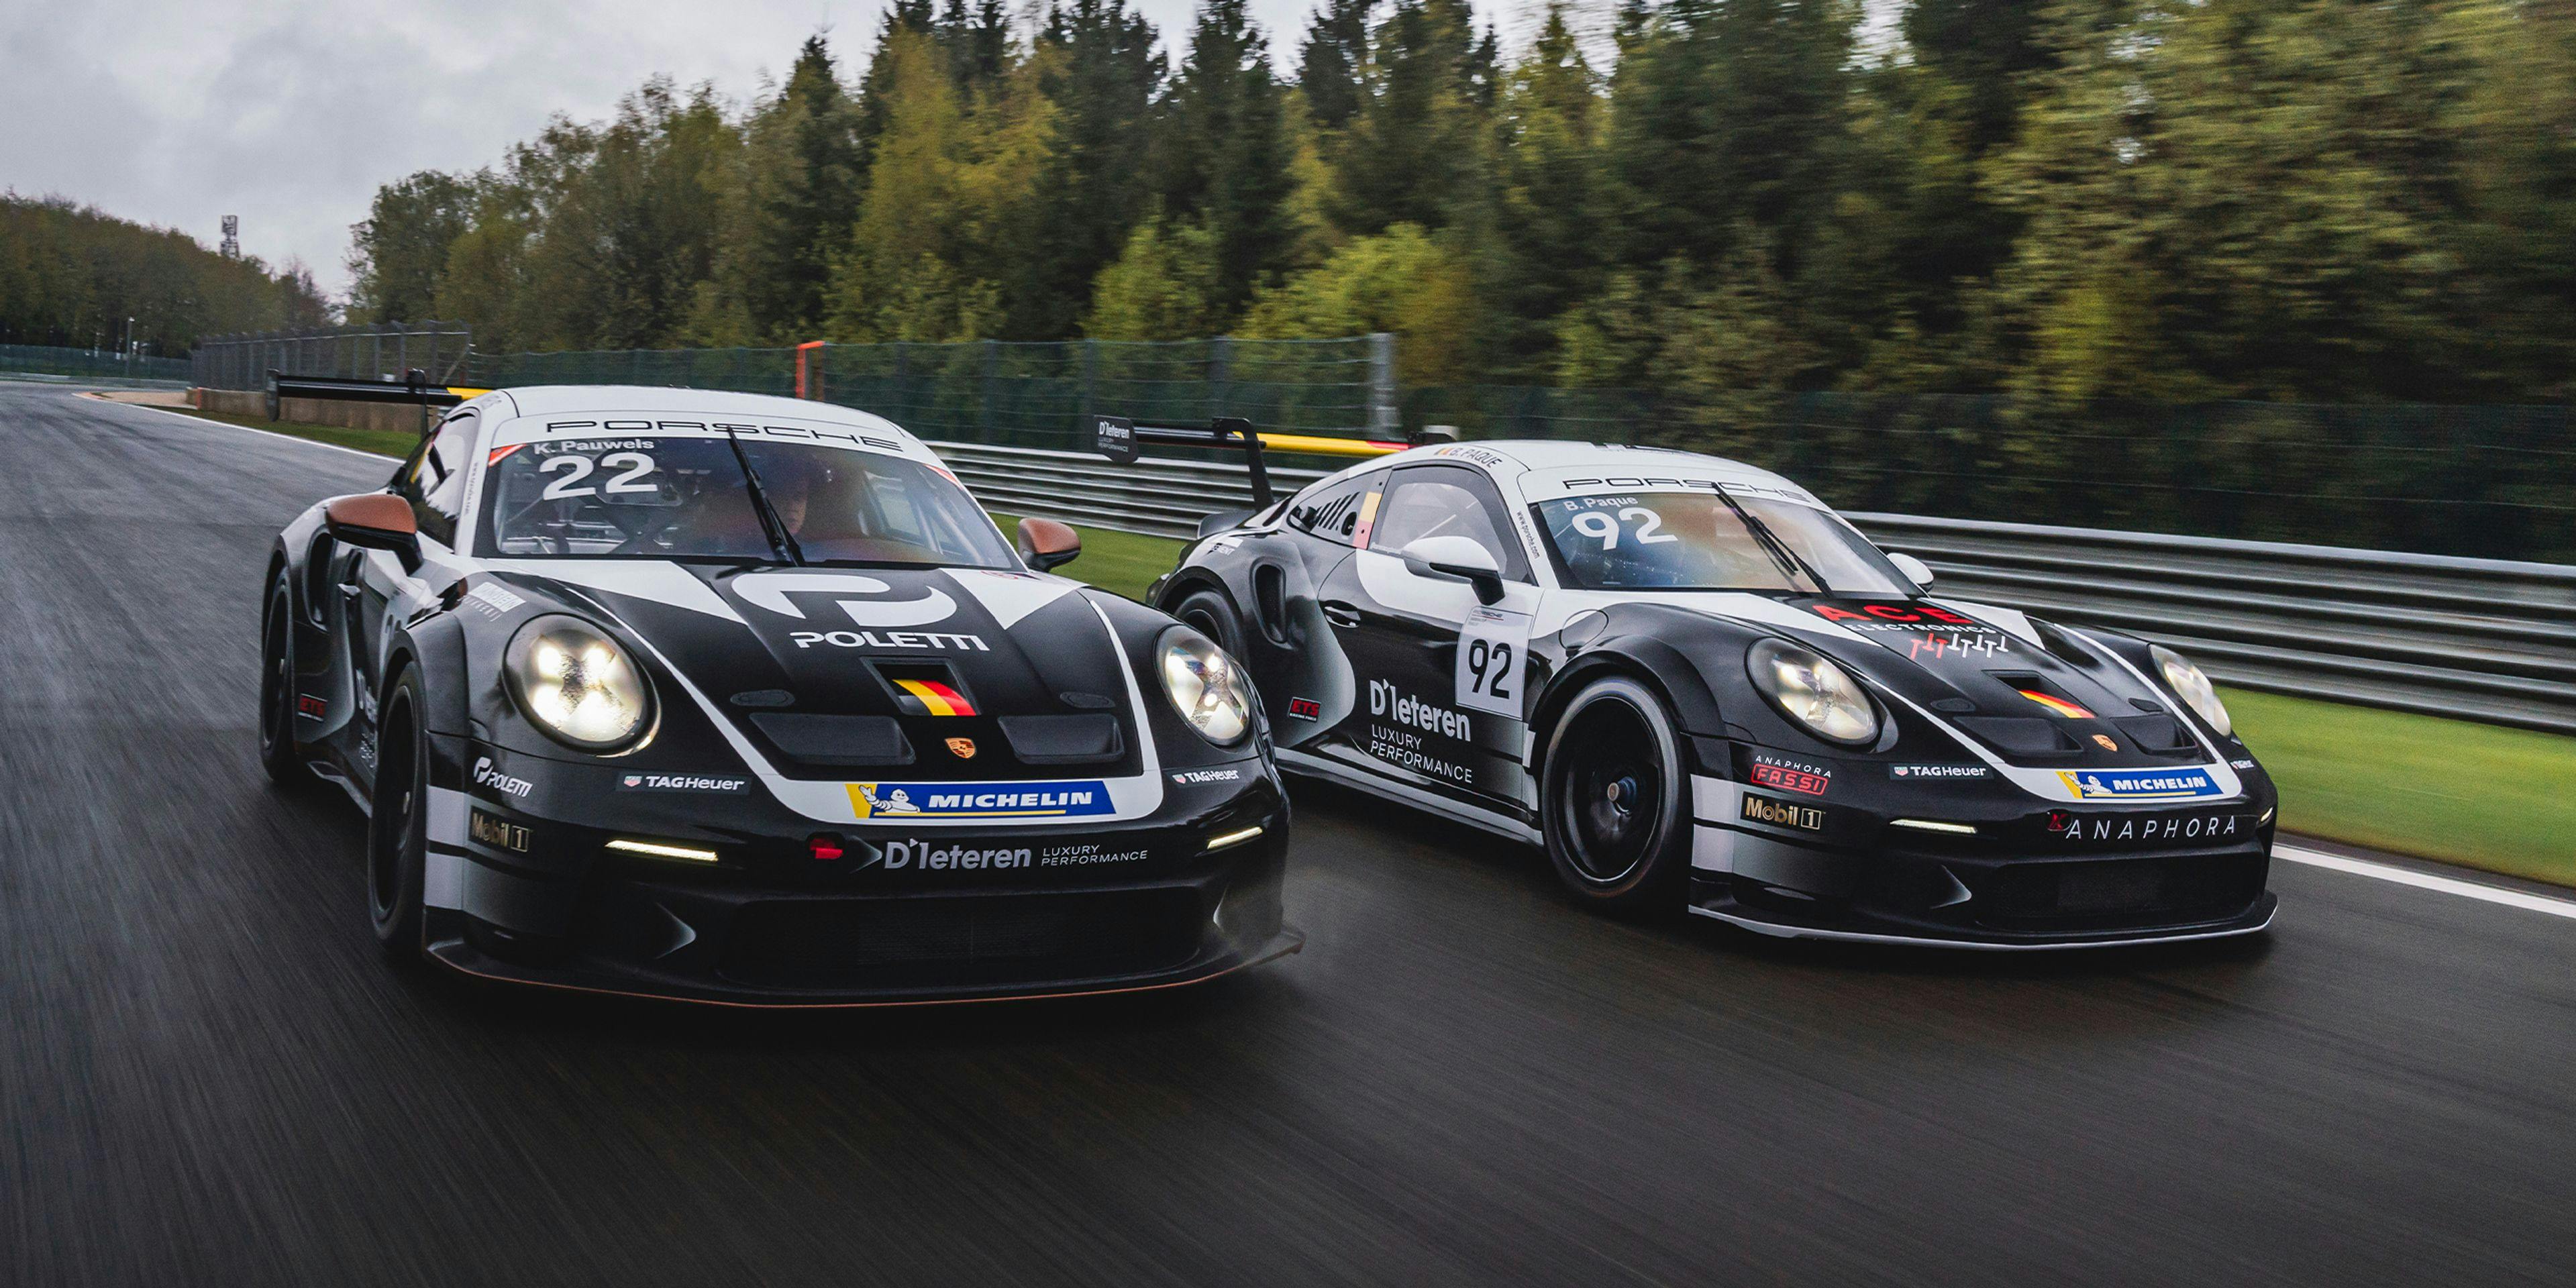 D’Ieteren Luxury Performance partners with NGT Racing